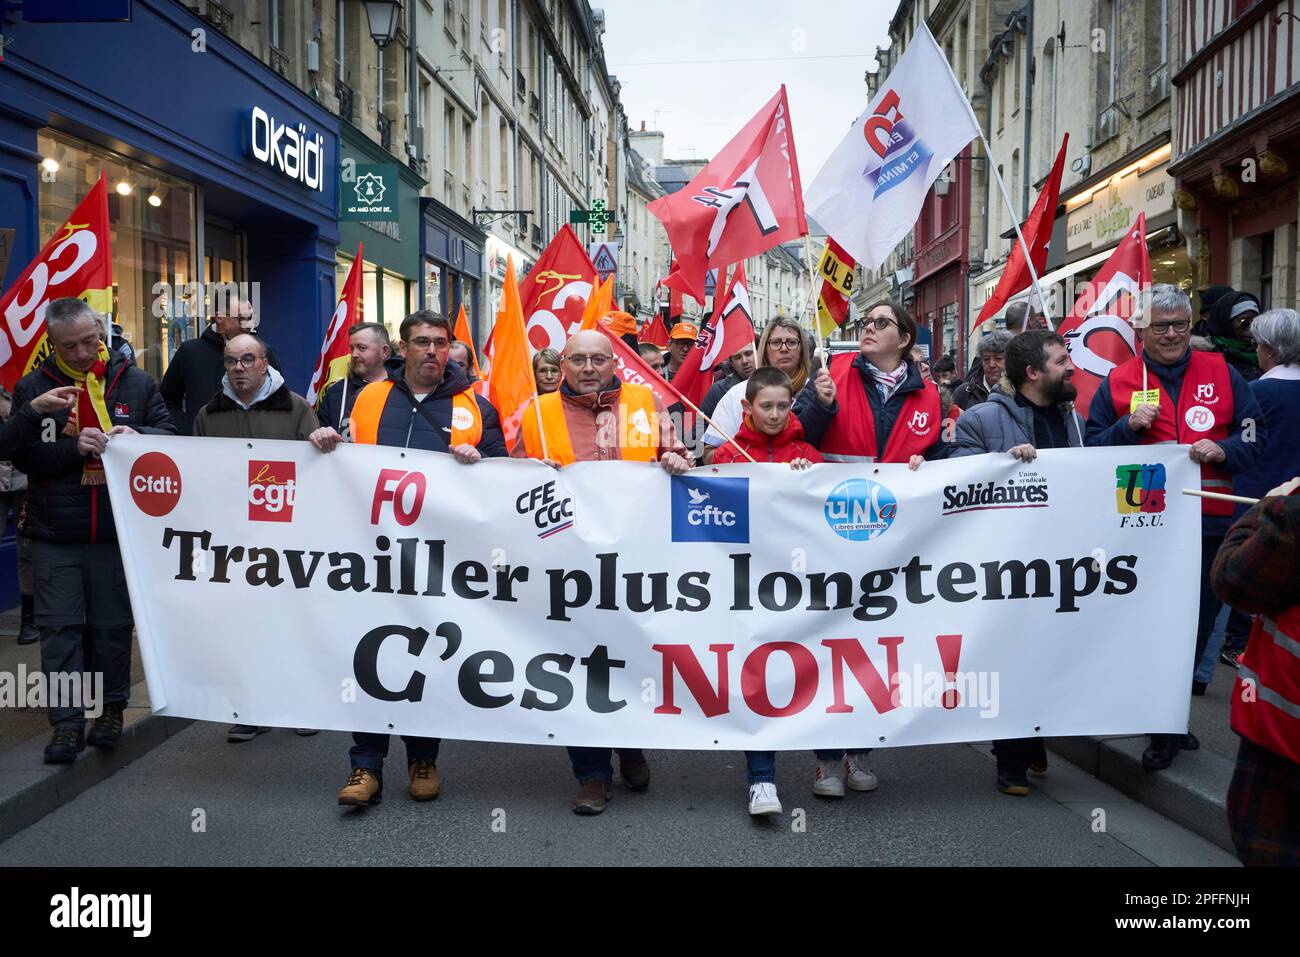 Una manifestazione a Bayeux, Francia contro l'aumento dell'età pensionabile a 64 anni. Il banner si traduce come "lavorare più a lungo - NO!" Foto Stock